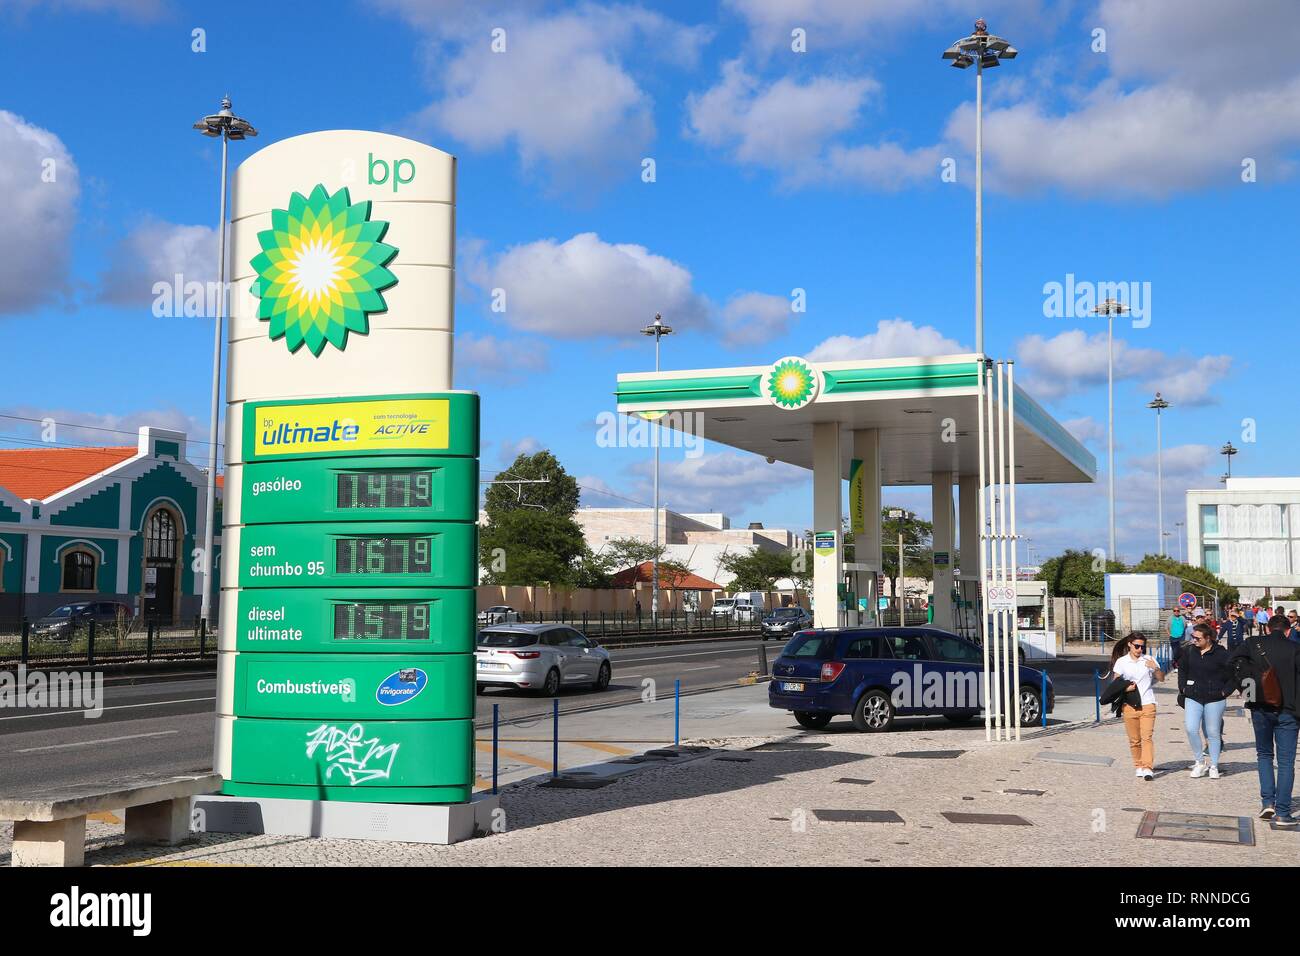 Lisbona, Portogallo - 5 giugno 2018: BP gas station prezzi in Portogallo. BP (British Petroleum) è una multinazionale del settore gas e petrolio azienda con sede in Foto Stock